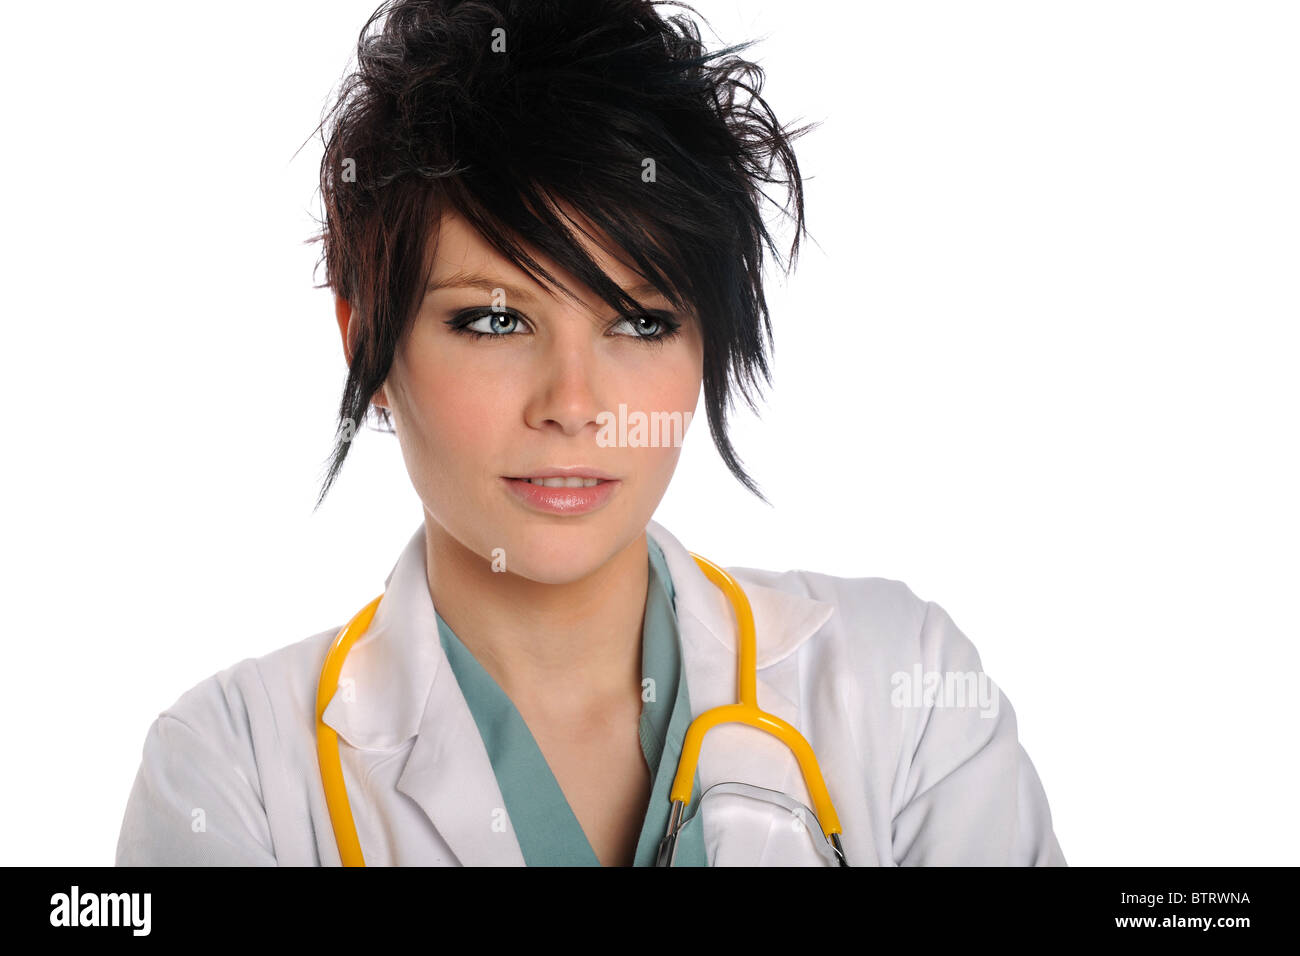 Porträt des jungen Arzt mit Stethoskop isoliert auf weißem Hintergrund Stockfoto